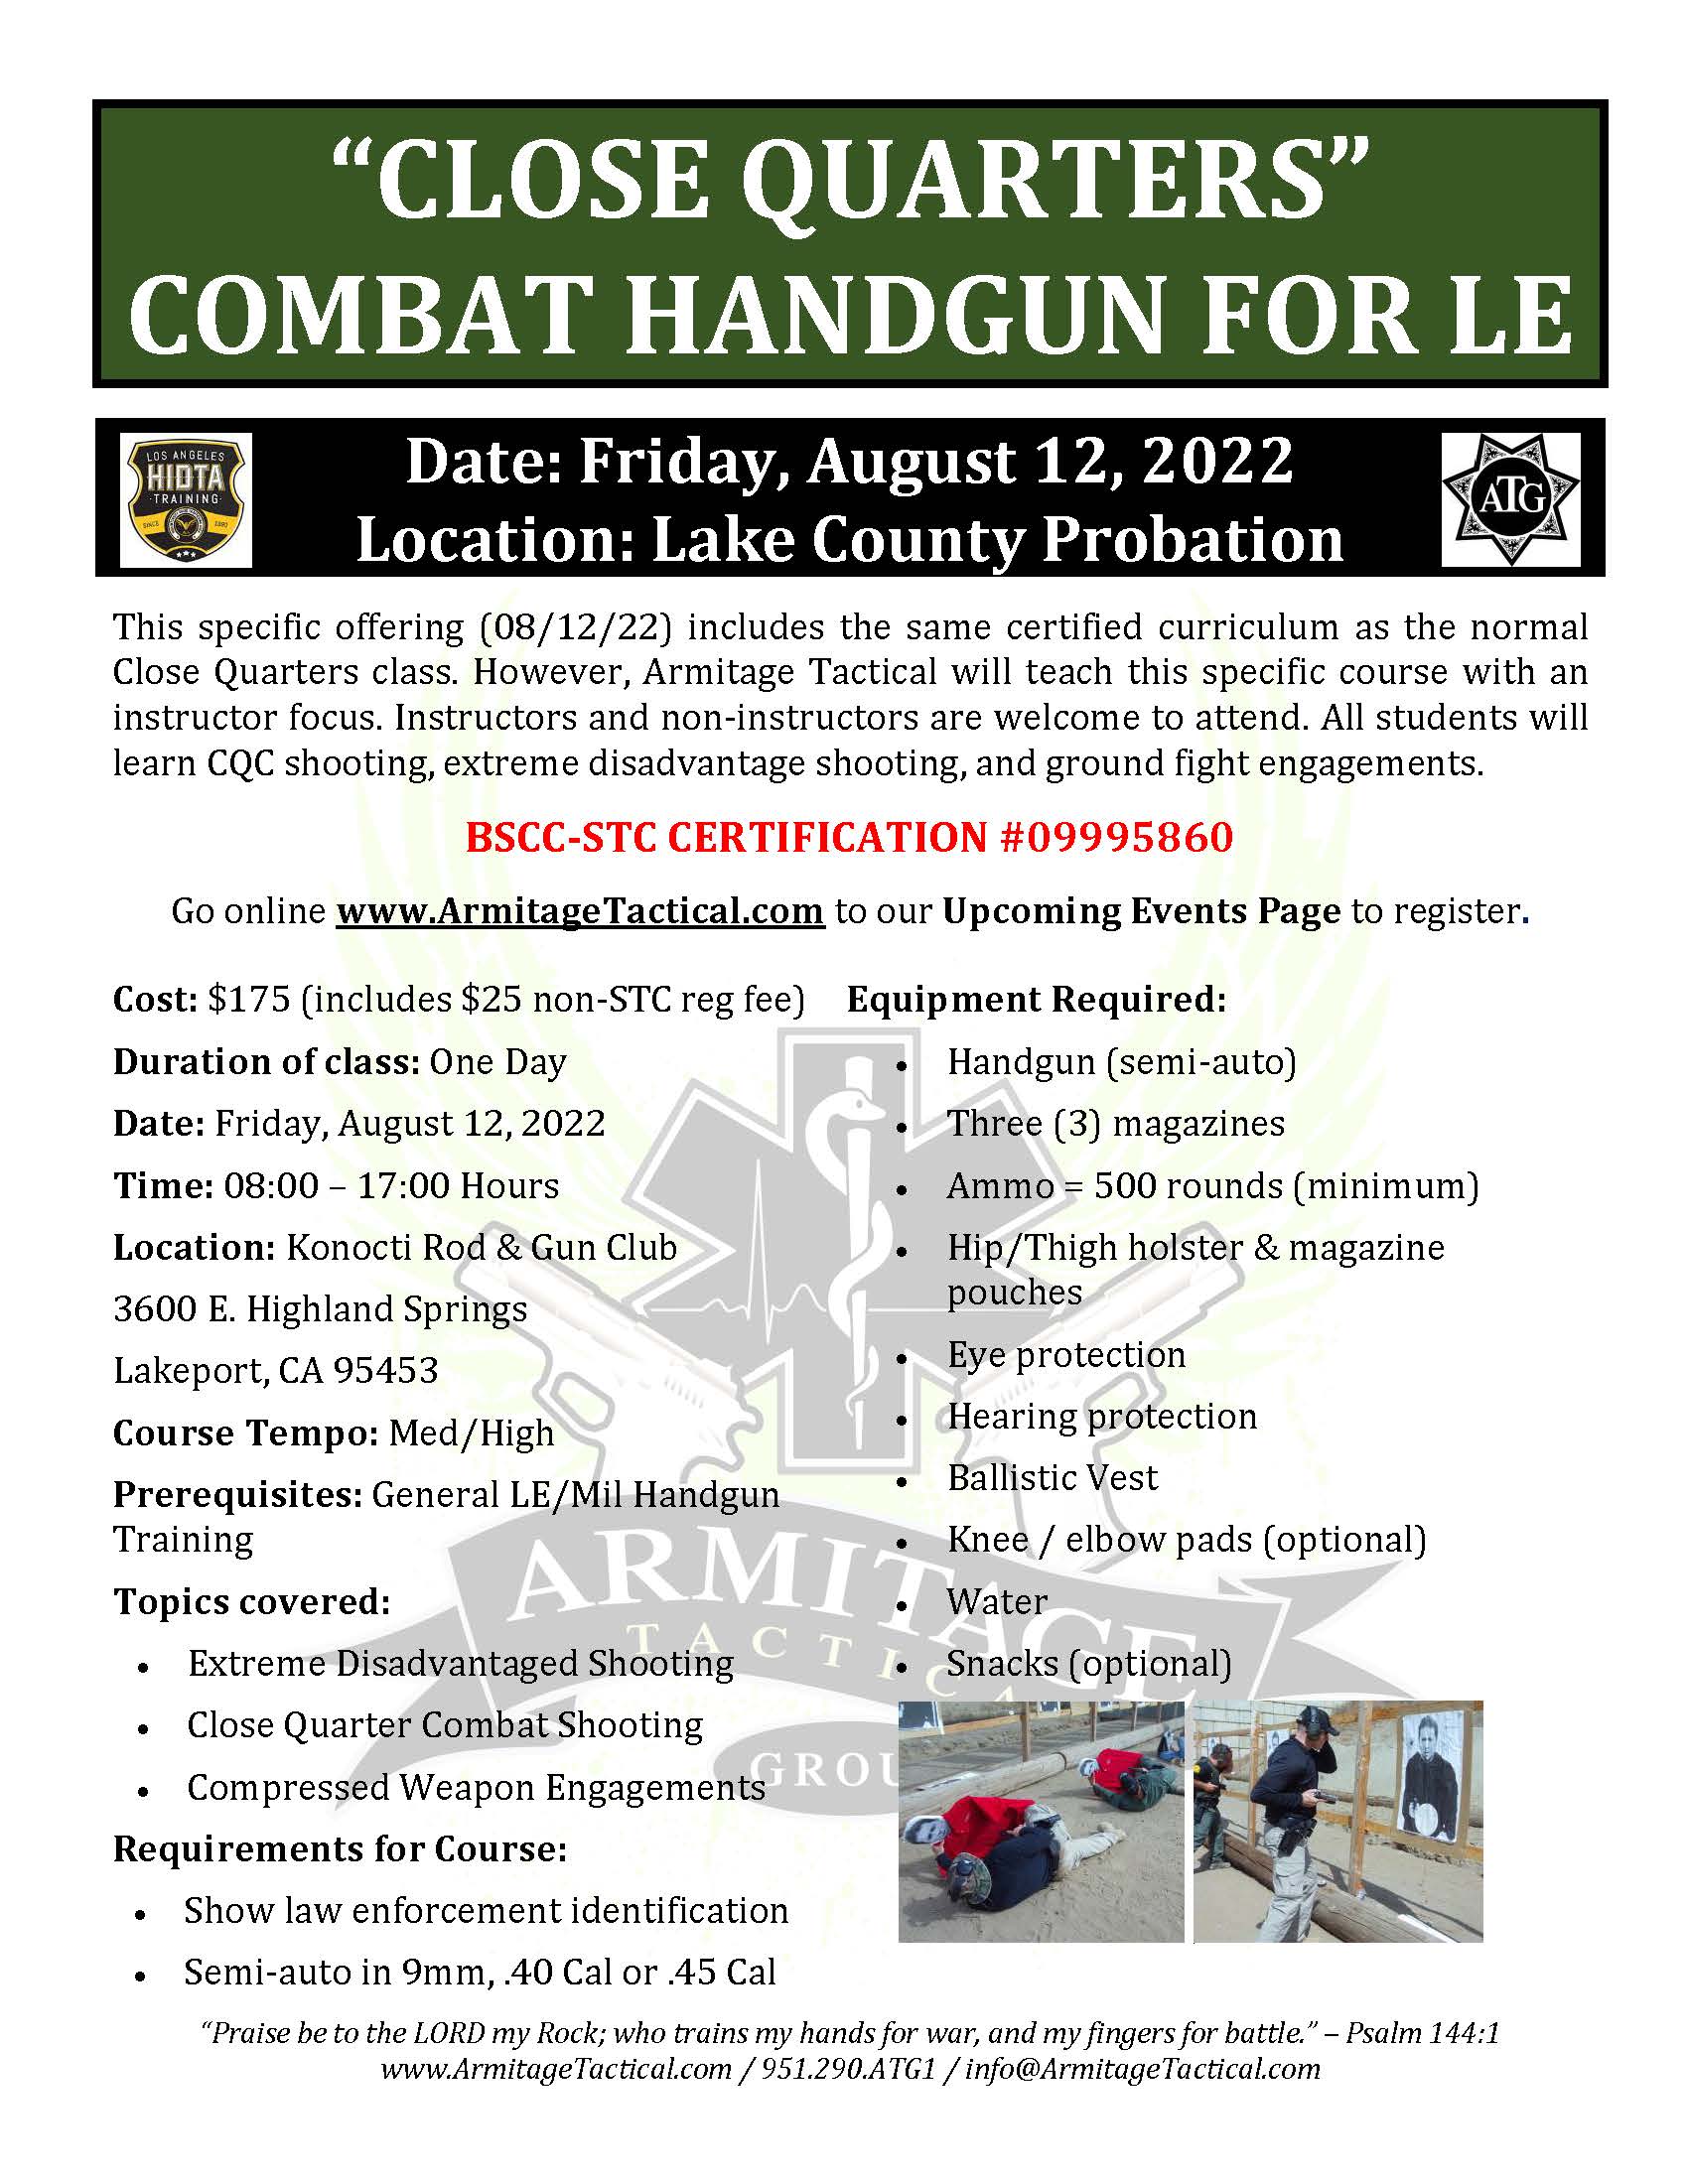 2022/08/12 - "Close Quarters" Combat Handgun for LE/Mil - Lakeport, CA